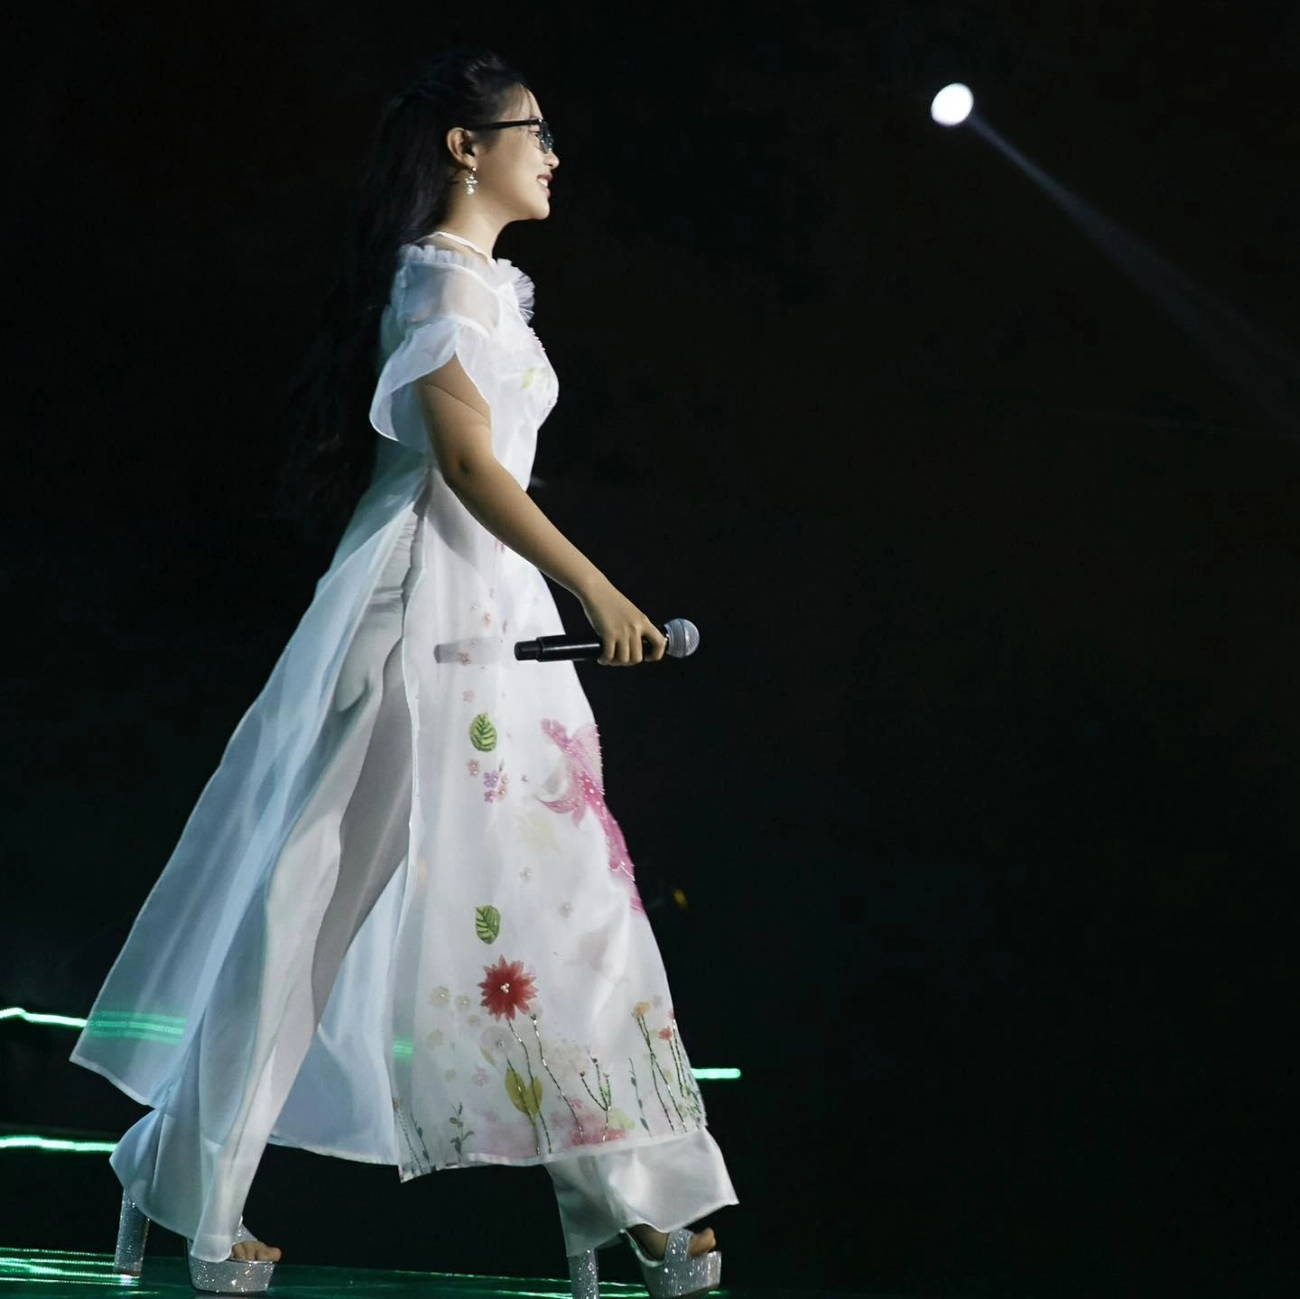 Phương mỹ chi diện áo dài tự tin catwalk trên sân khấu nhìn xuống dưới mới thót tim - 3